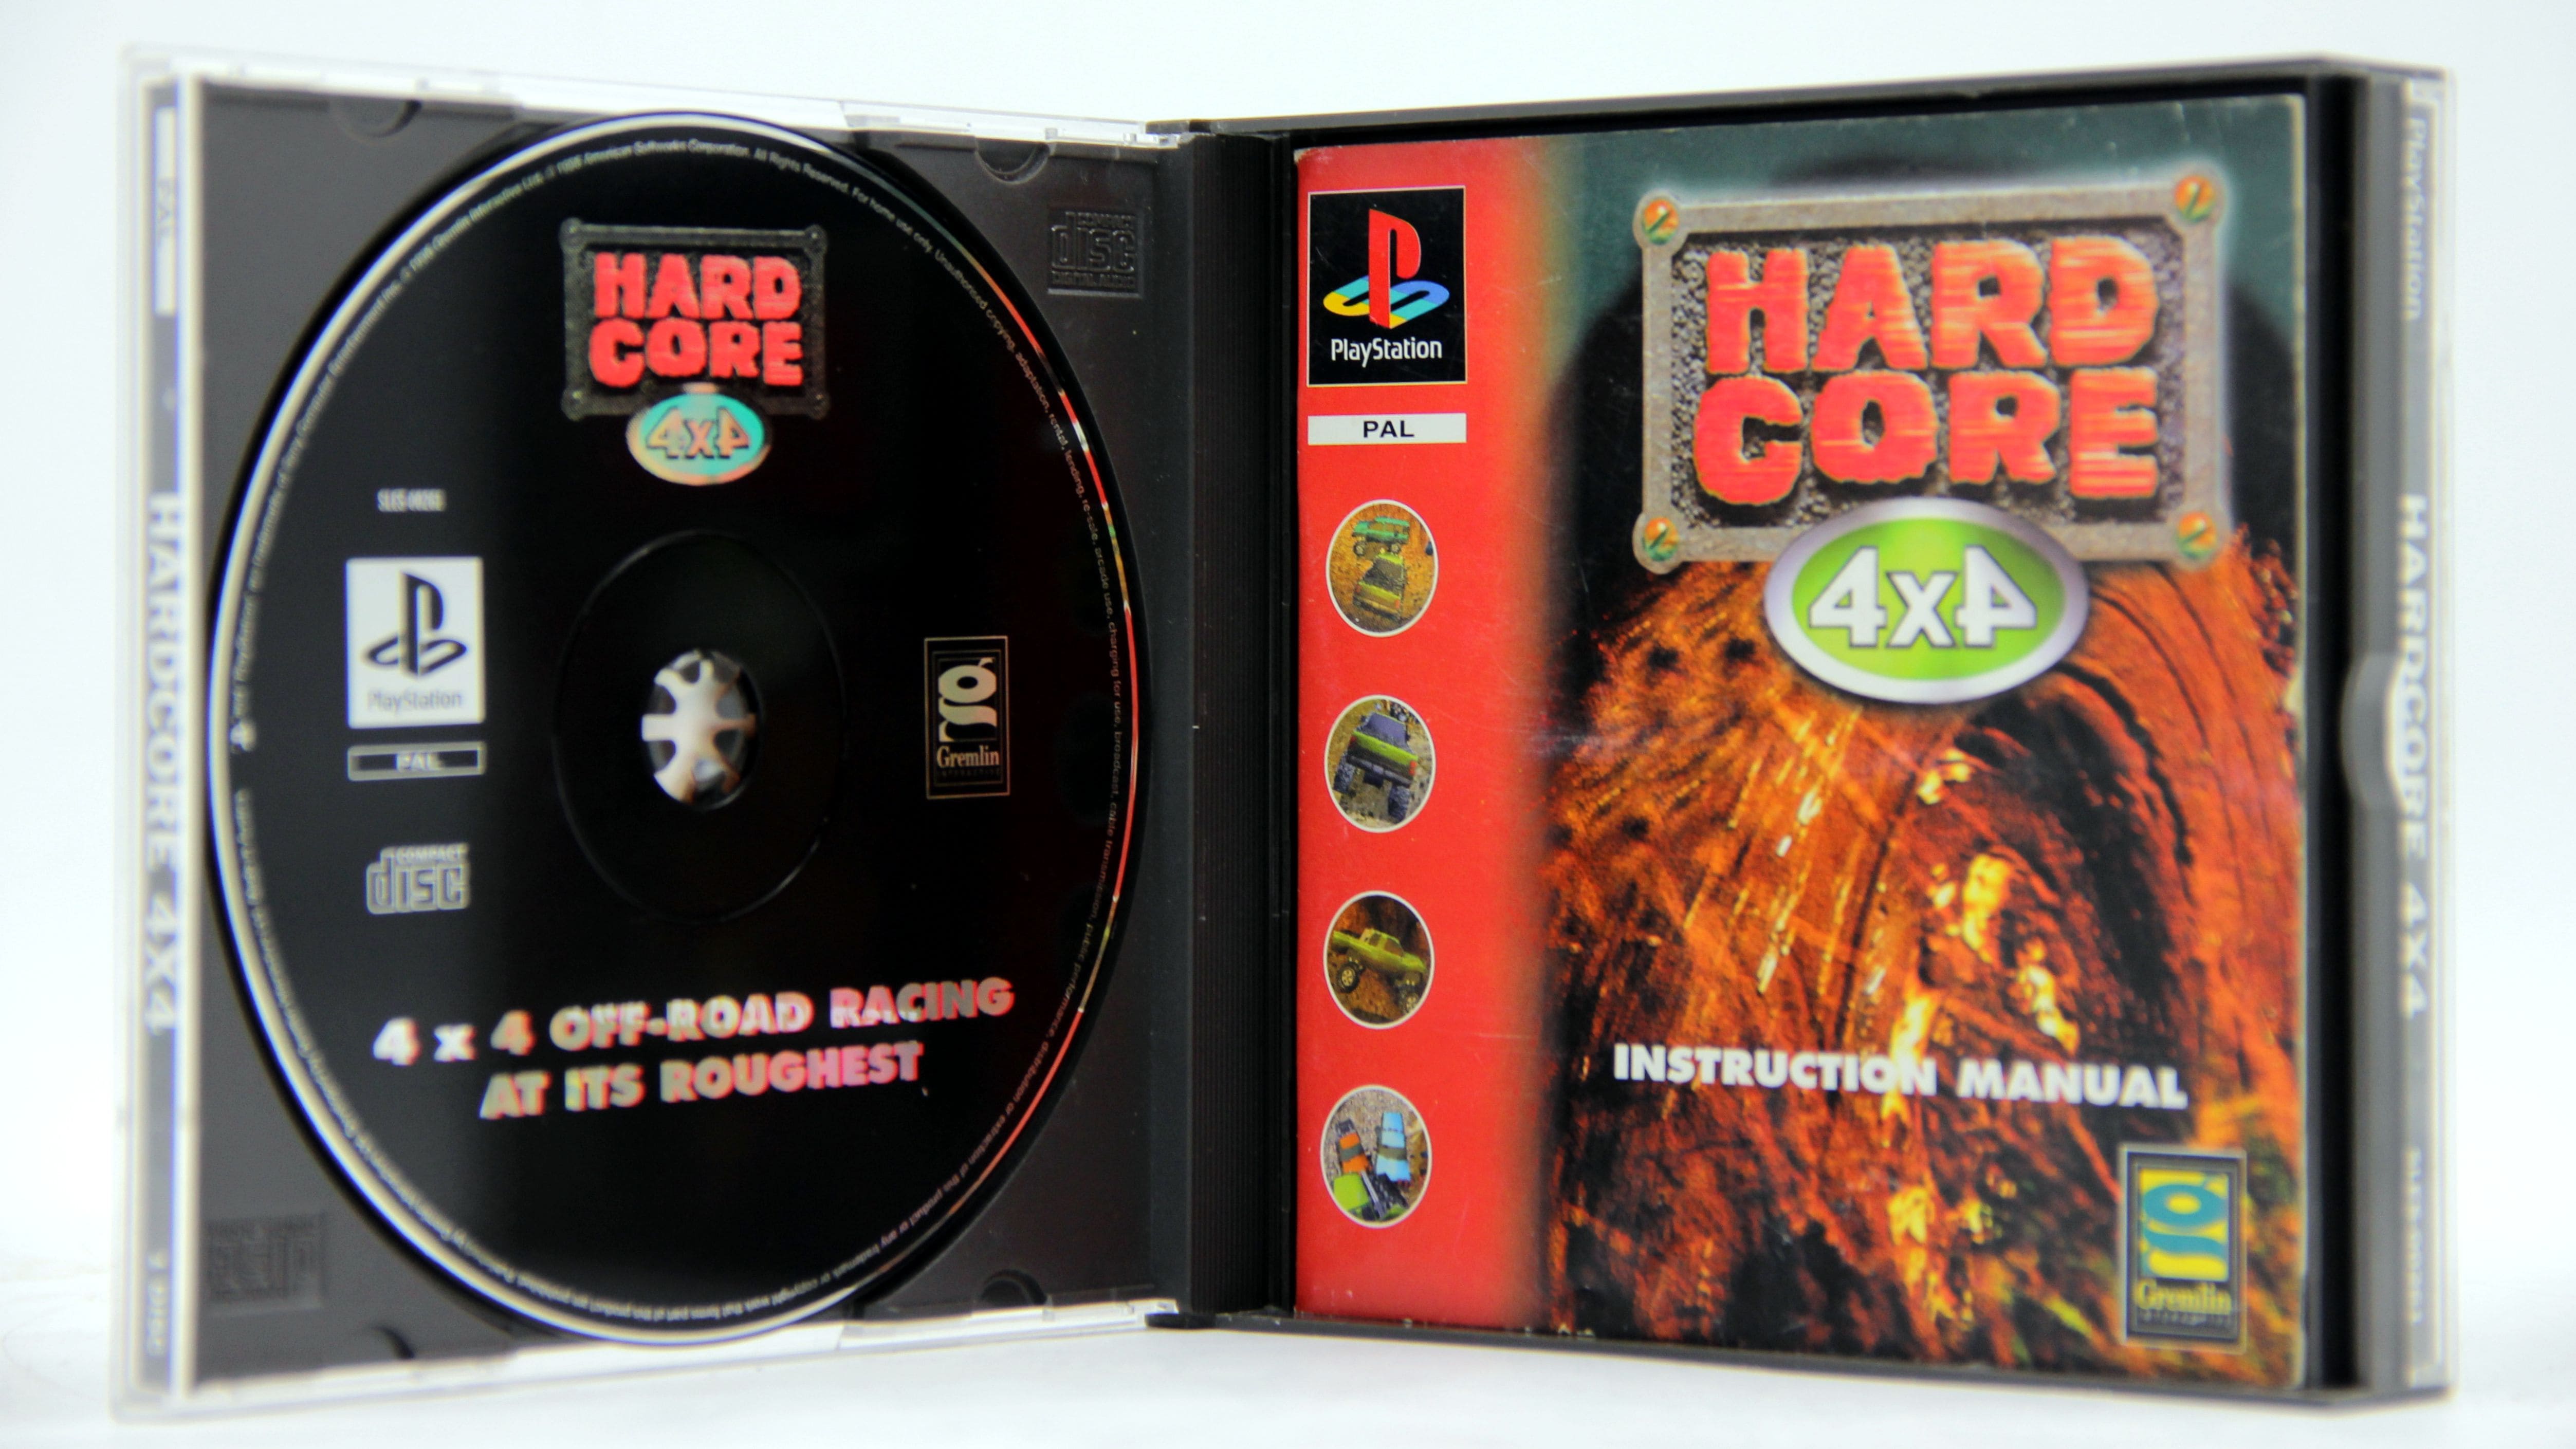 Hardcore игра. Пластилиновые бои ps1 диск.